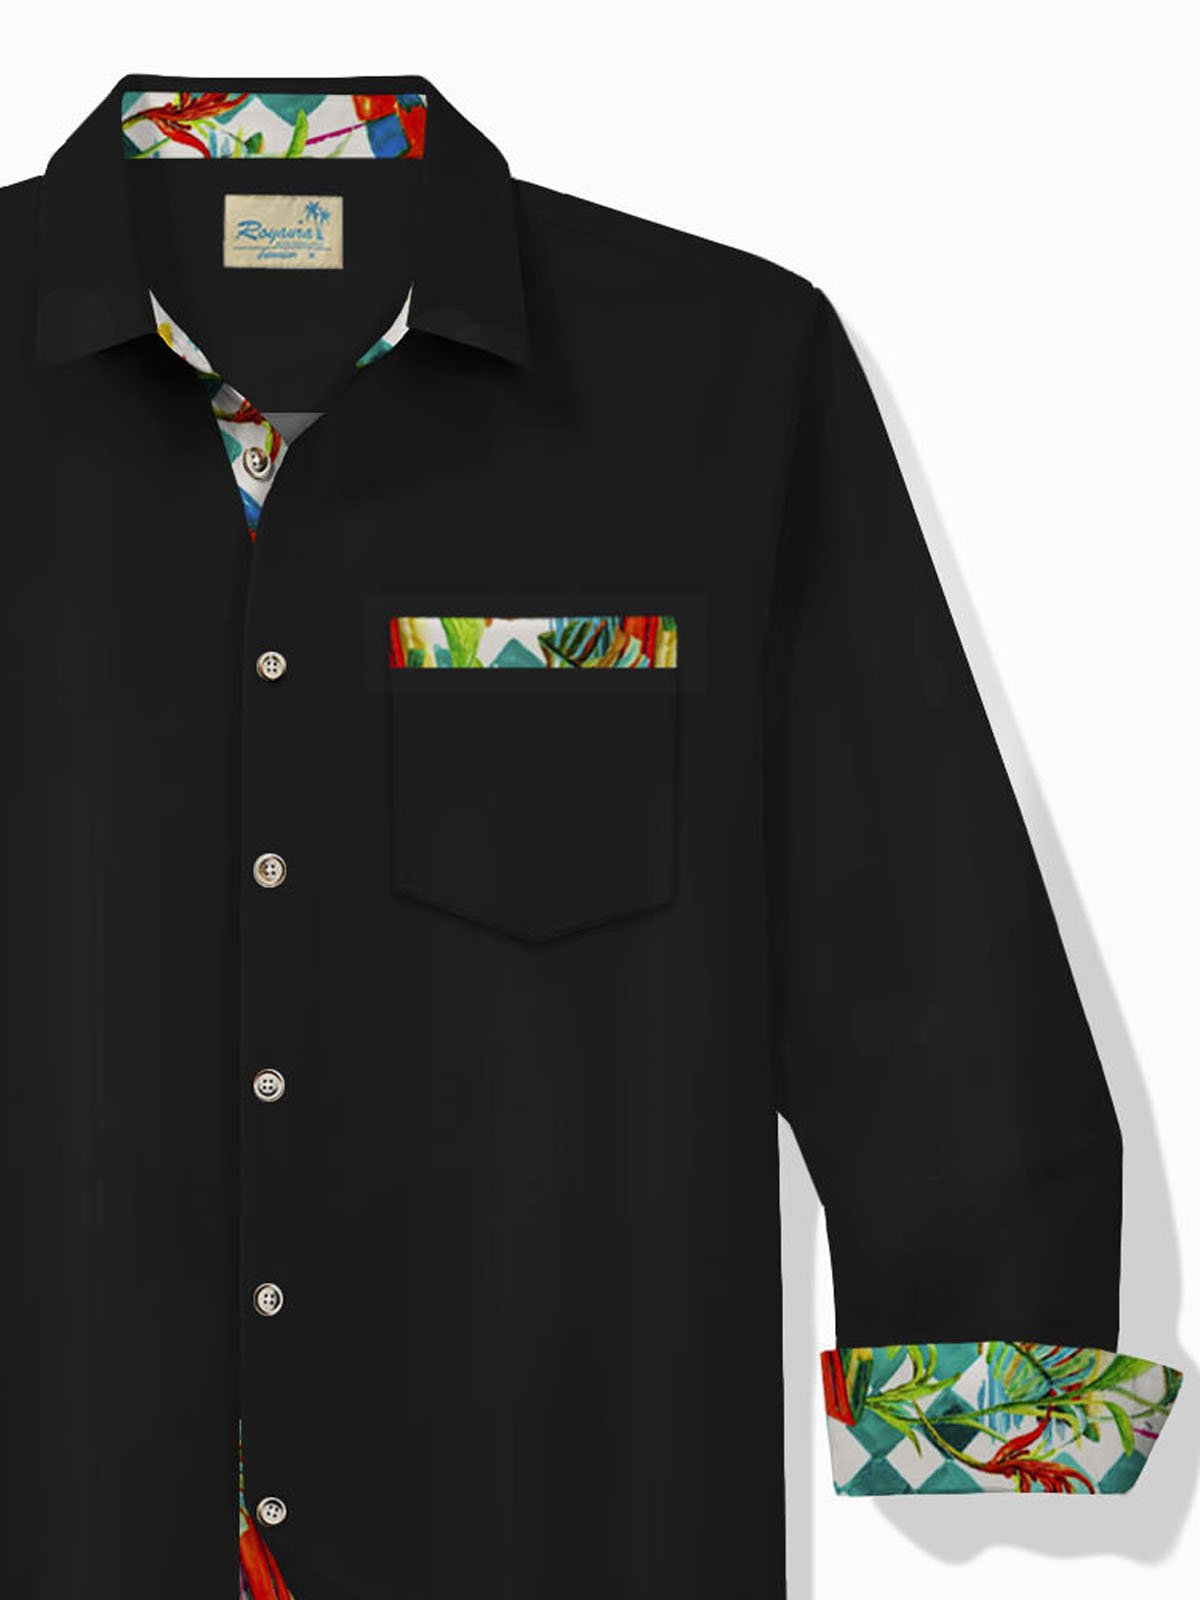 Royaura® Holiday Casual Black Men's Long Sleeve Shirts Floral Art Patchwork Camp Pocket Shirts Big Tall